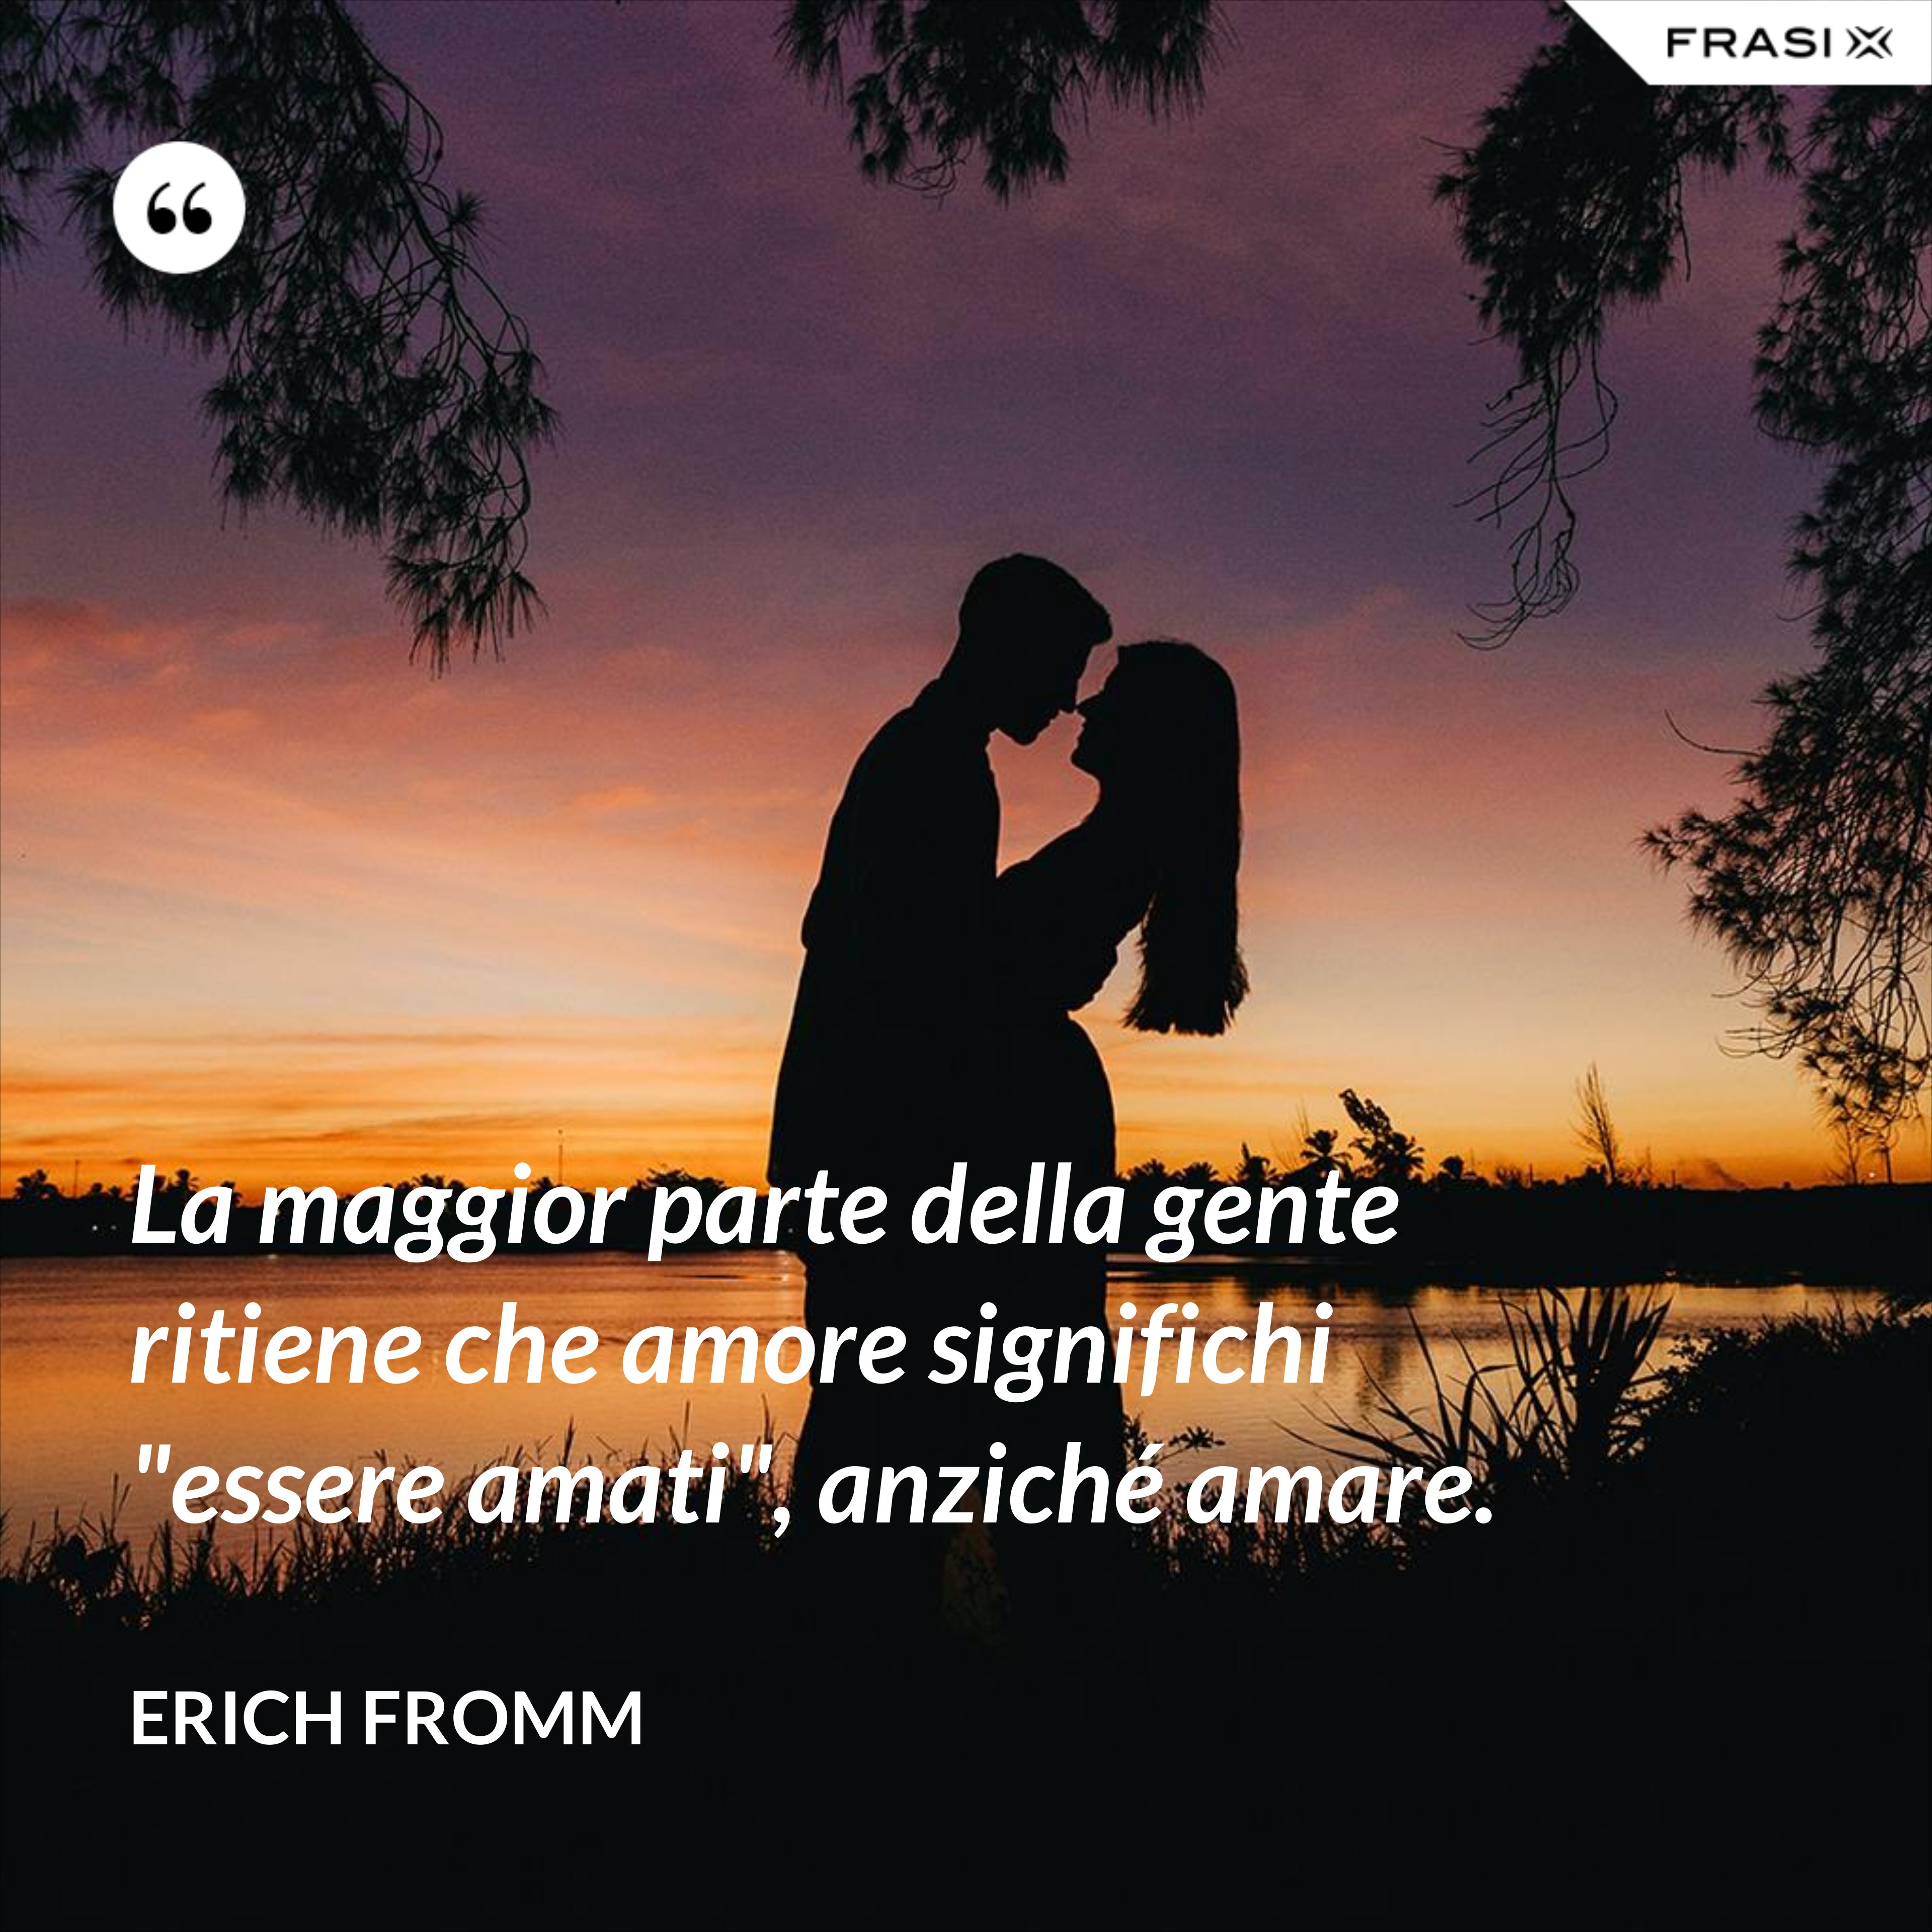 La maggior parte della gente ritiene che amore significhi "essere amati", anziché amare. - Erich Fromm